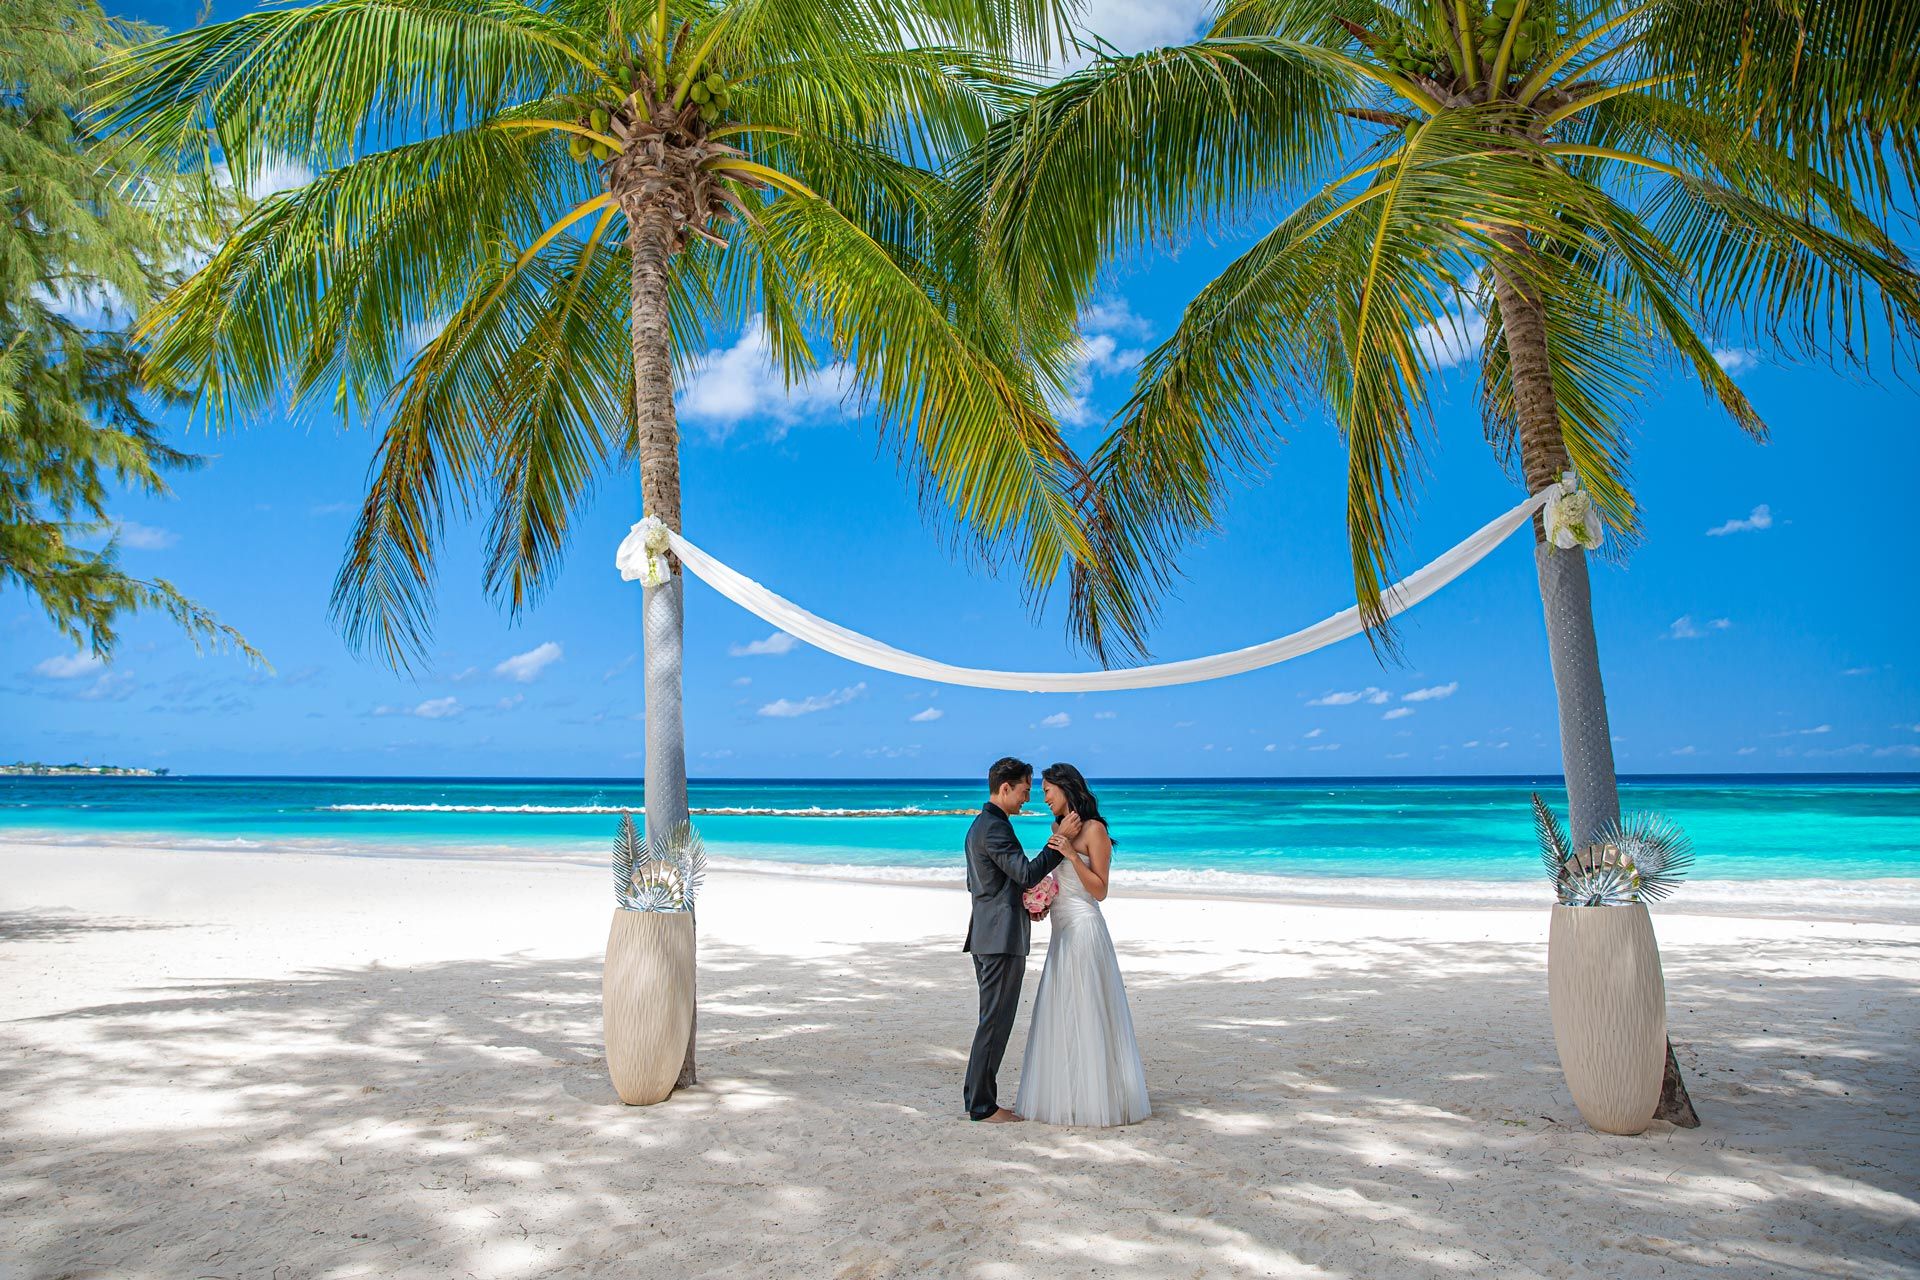 Sandals-Barbados-Couple-Wedding-Beach2